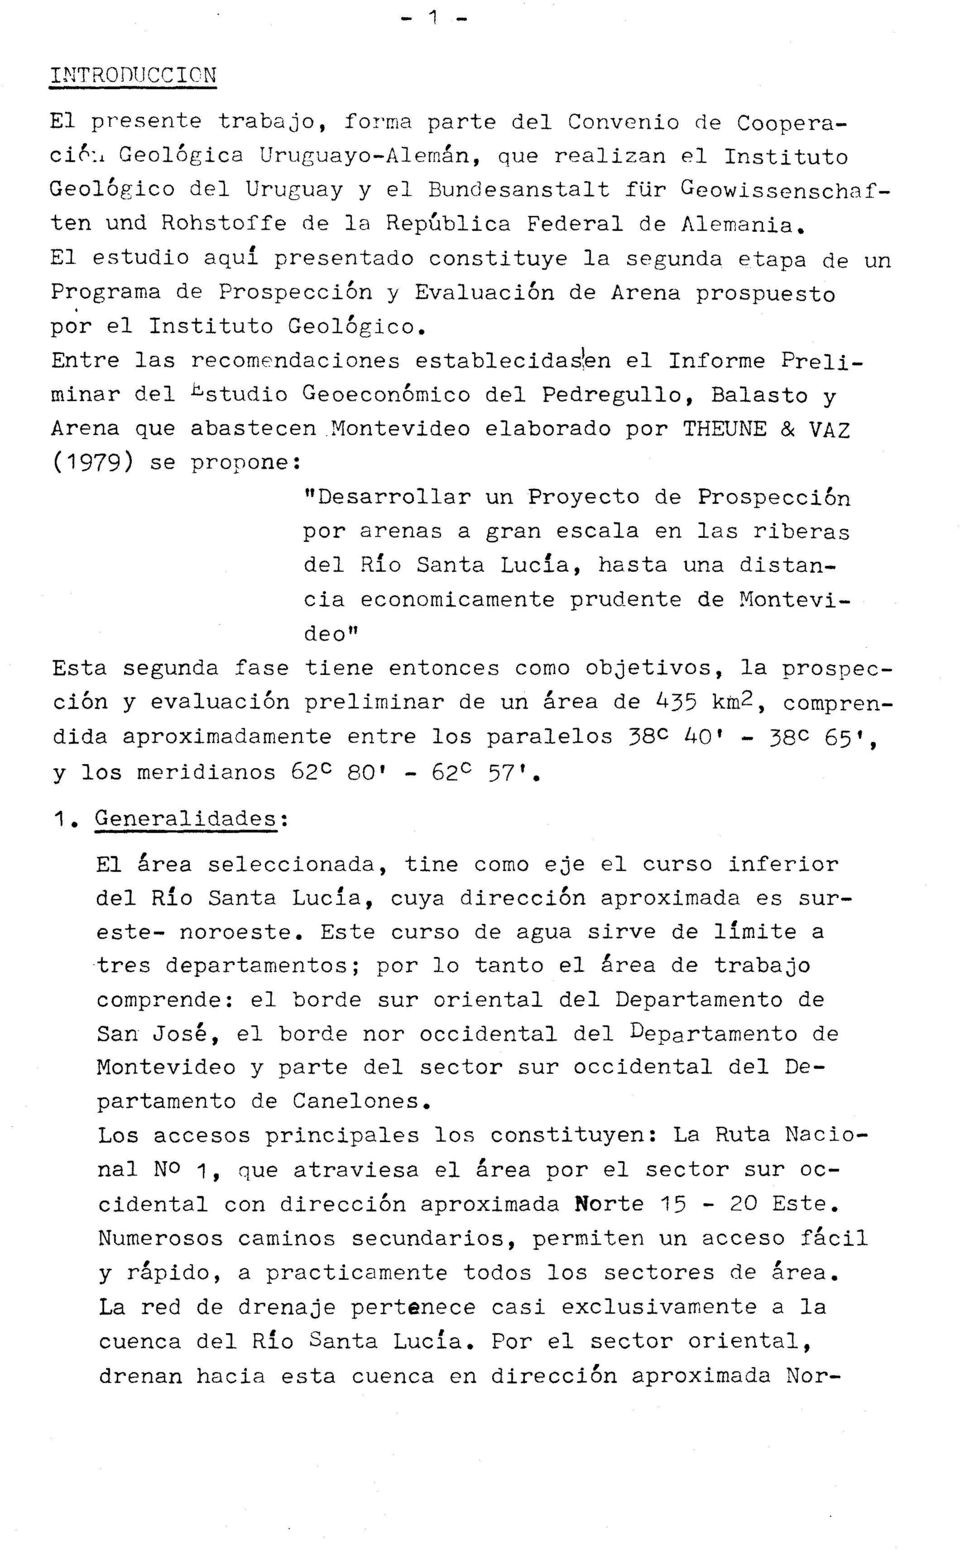 Entre las recomendaciones establecidasíen el Informe Preliminar del ^studio Geoeconómico del Pedregullo, Balasto y Arena que abastecen Montevideo elaborado por THEUNE & VAZ (1979) se propone: